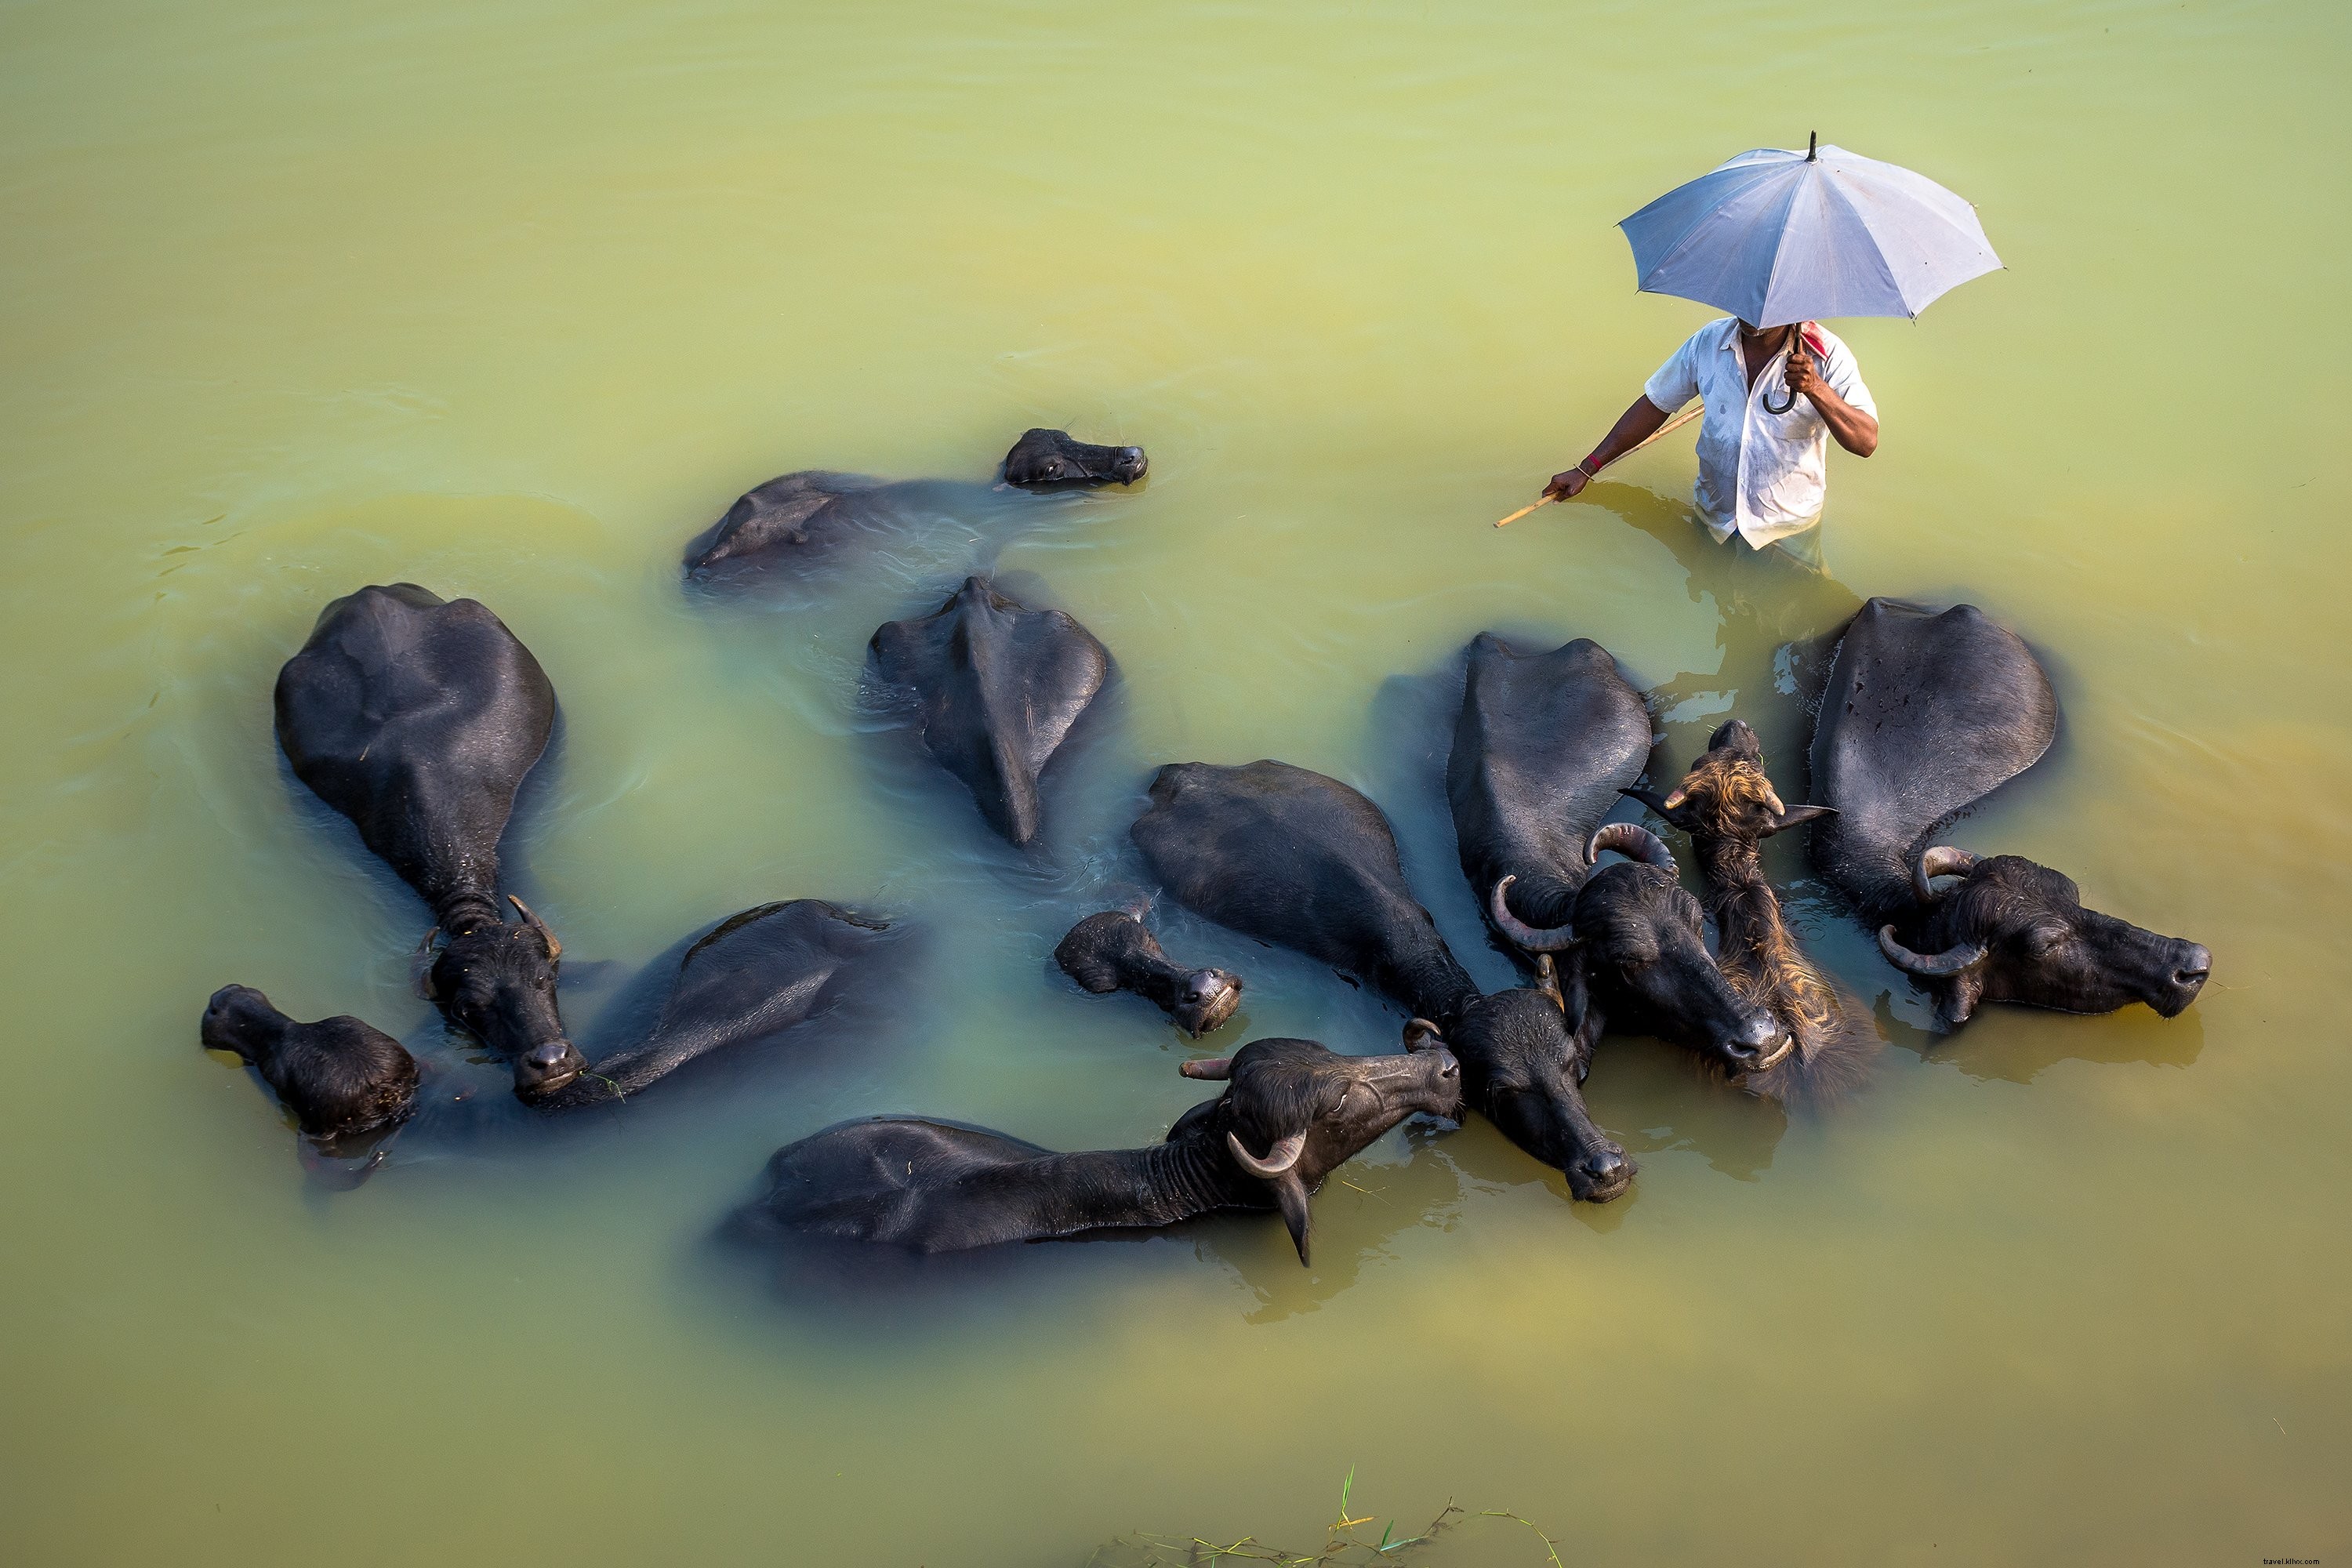 Foto Orang yang Memegang Payung Dikelilingi Hewan 